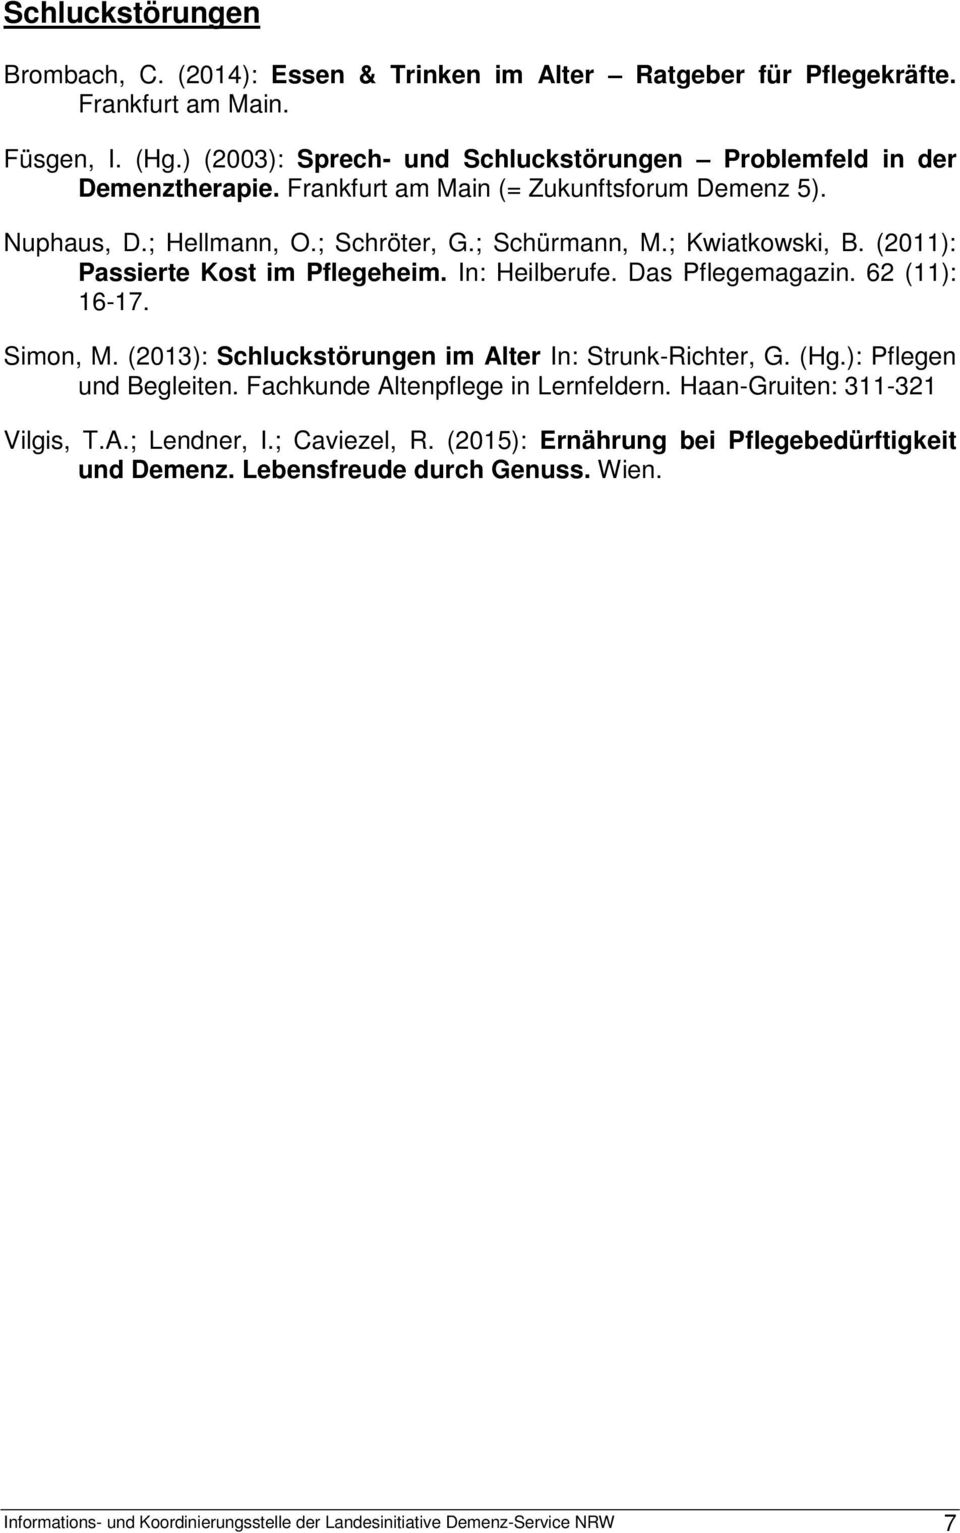 (2011): Passierte Kost im Pflegeheim. In: Heilberufe. Das Pflegemagazin. 62 (11): 16-17. Simon, M. (2013): Schluckstörungen im Alter In: Strunk-Richter, G. (Hg.): Pflegen und Begleiten.